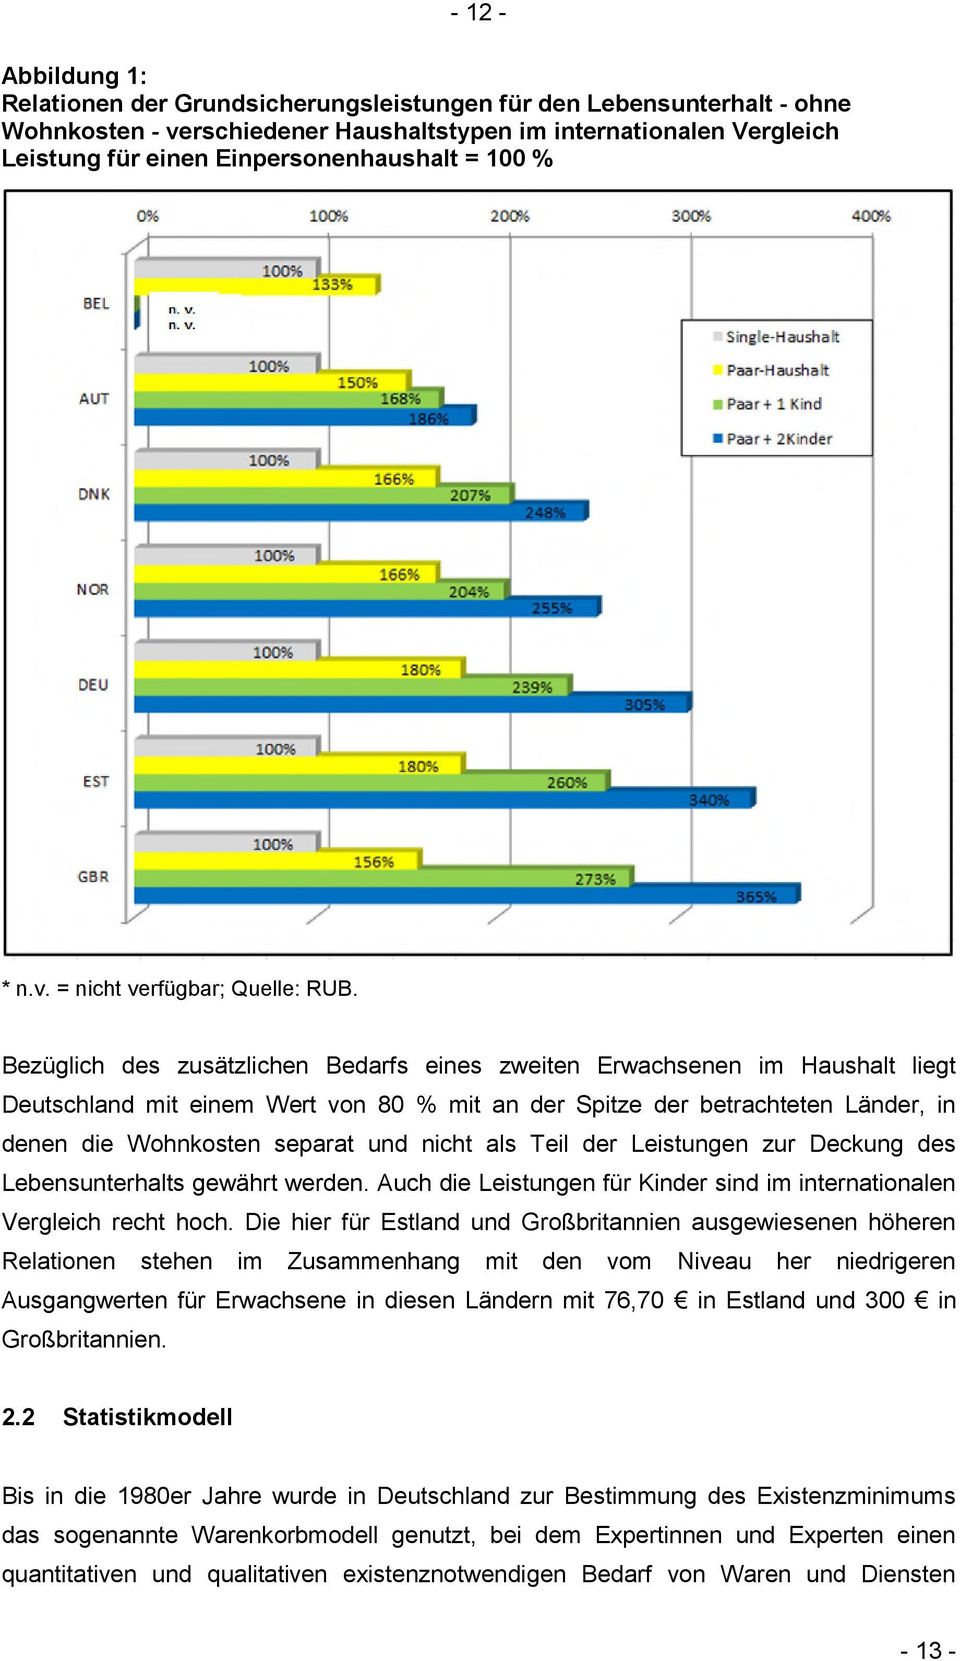 Bezüglich des zusätzlichen Bedarfs eines zweiten Erwachsenen im Haushalt liegt Deutschland mit einem Wert von 80 % mit an der Spitze der betrachteten Länder, in denen die Wohnkosten separat und nicht